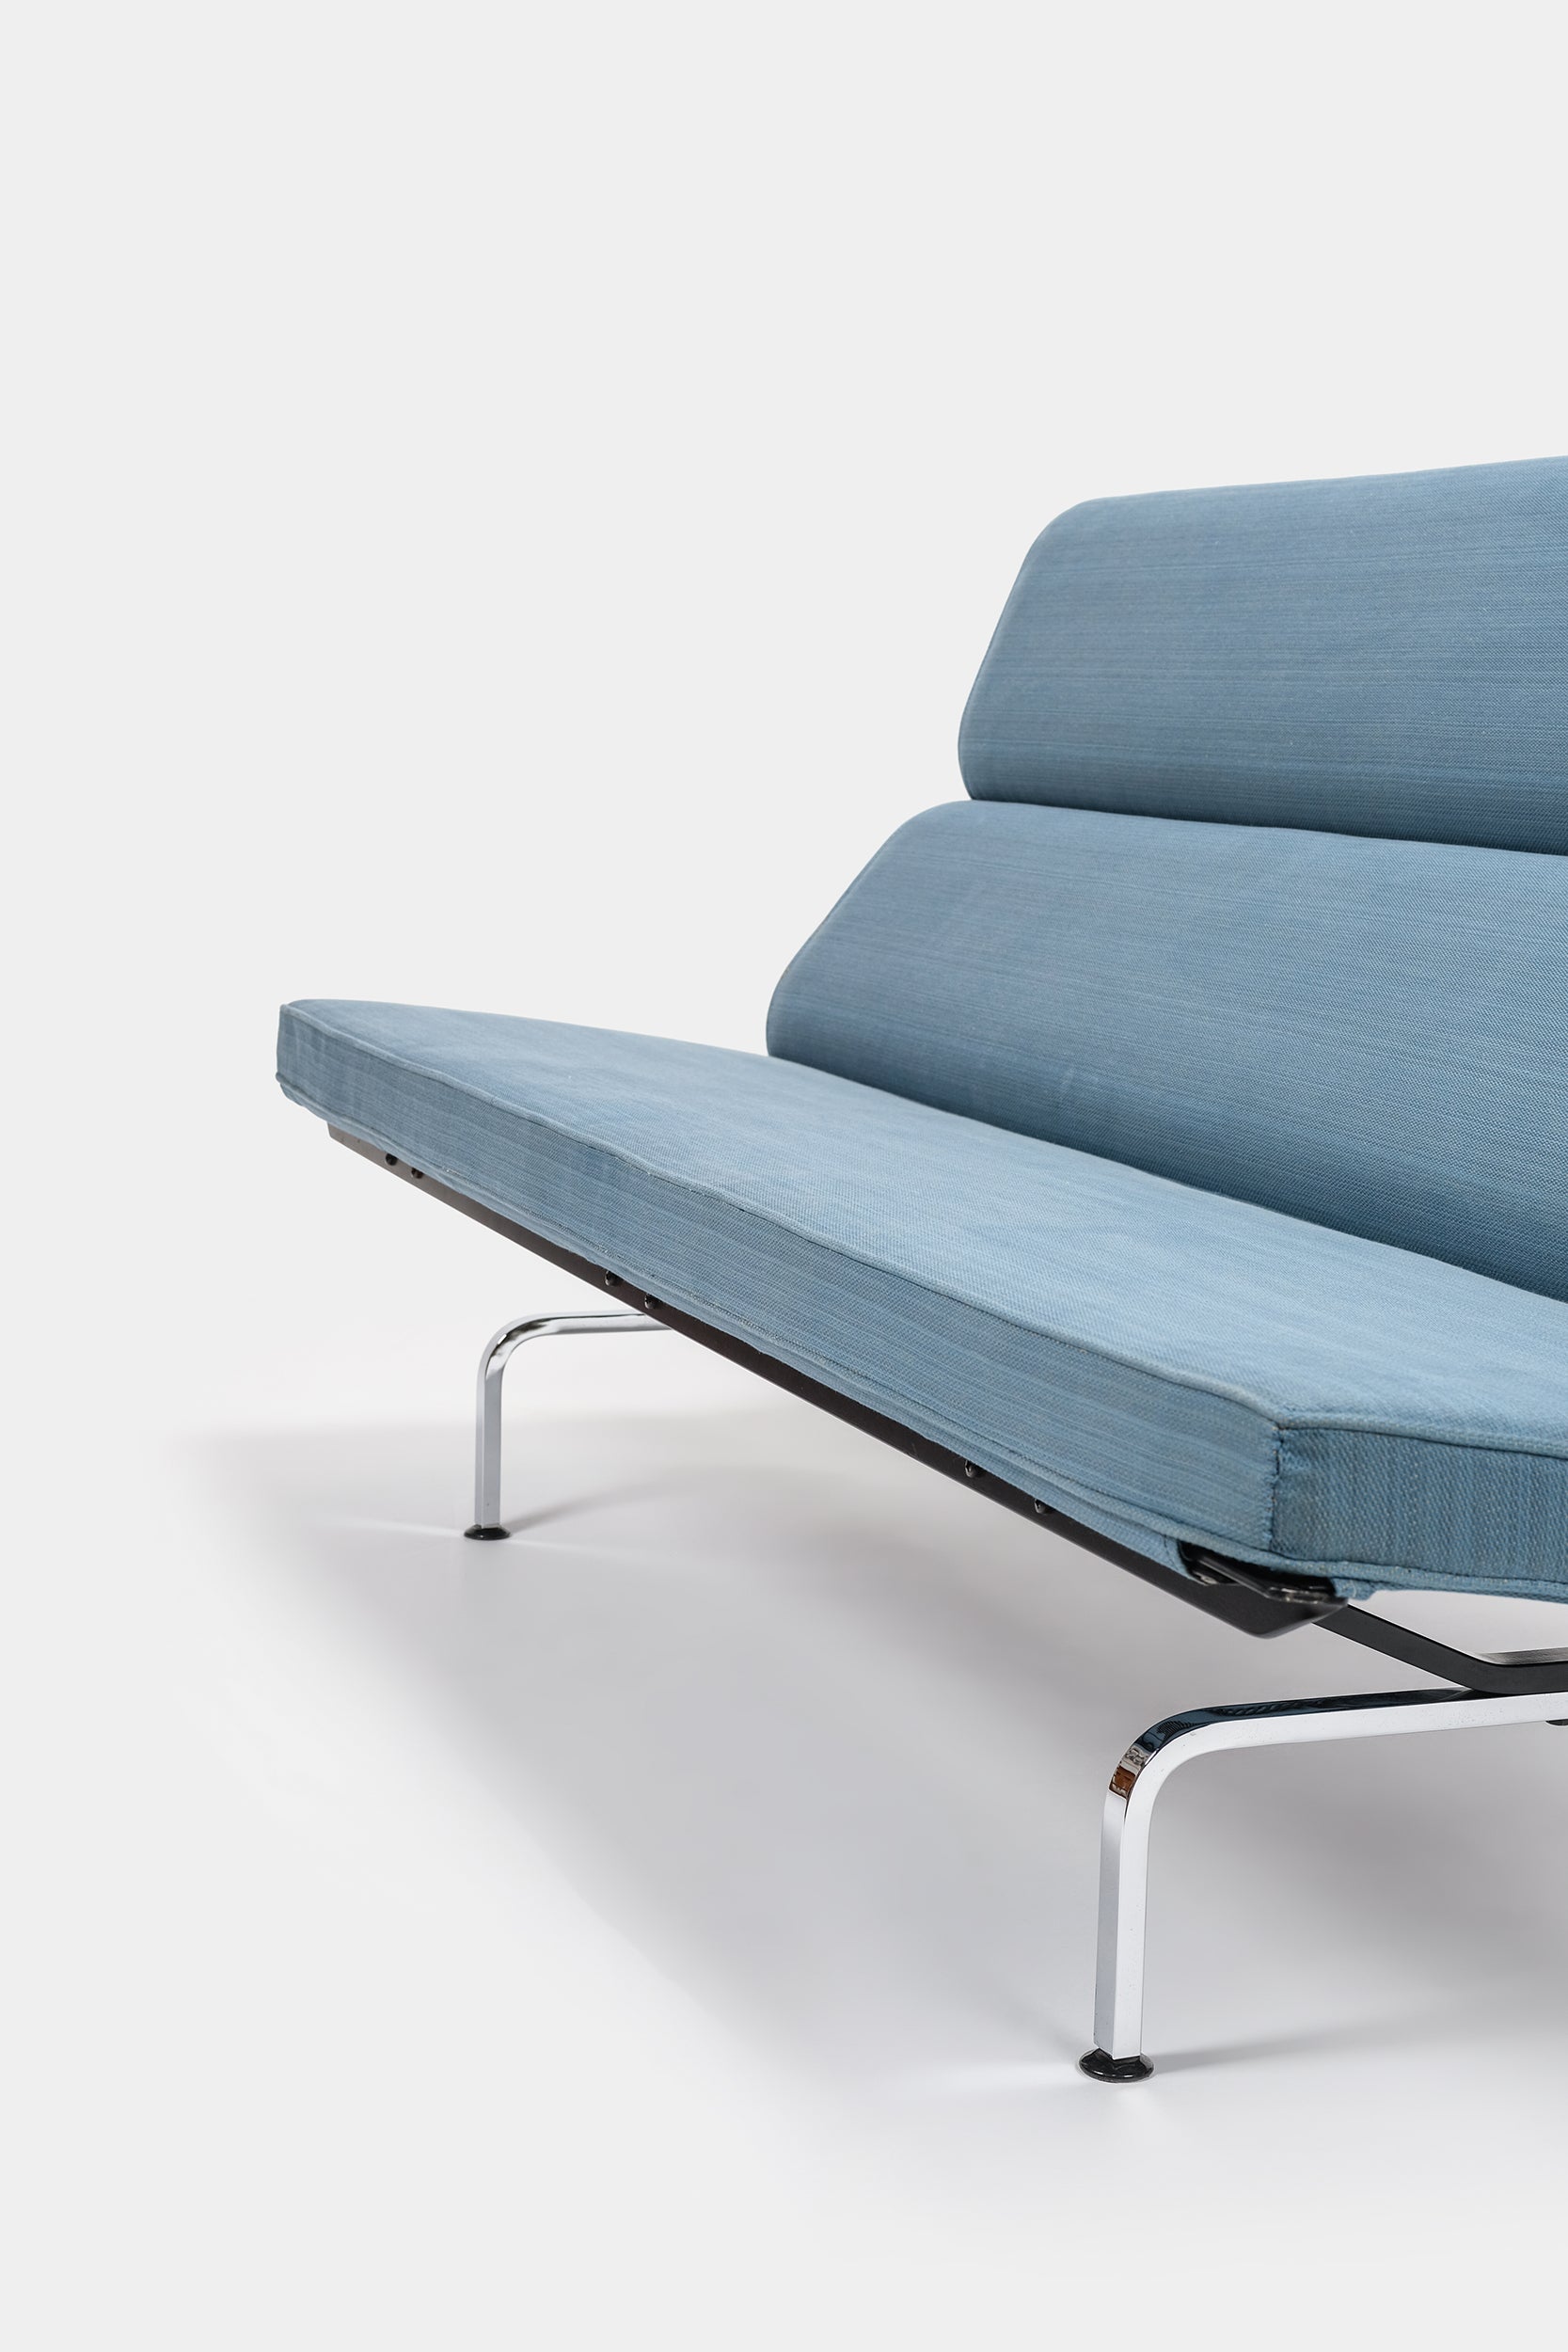 Charles & Ray Eames, "Compact" Sofa, 50er